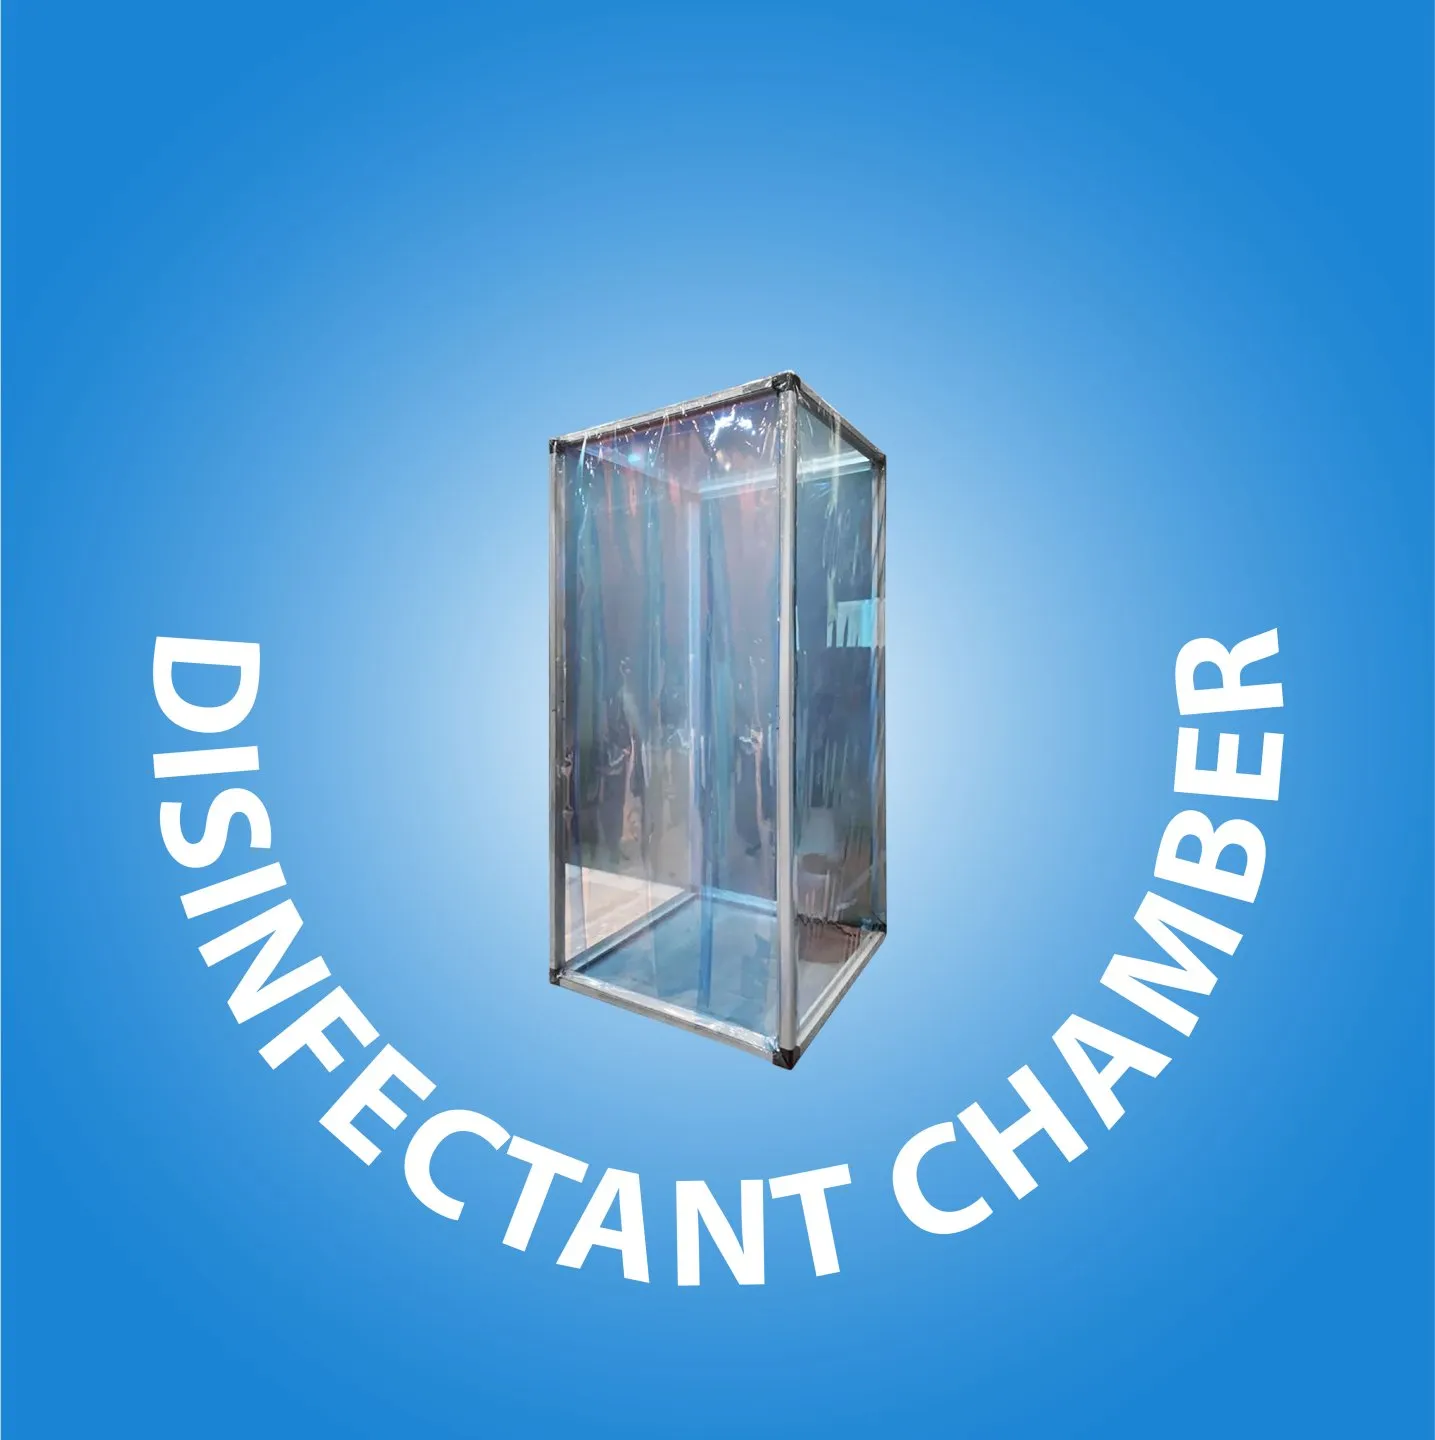  Disinfectant Chamber cover kategori website 44